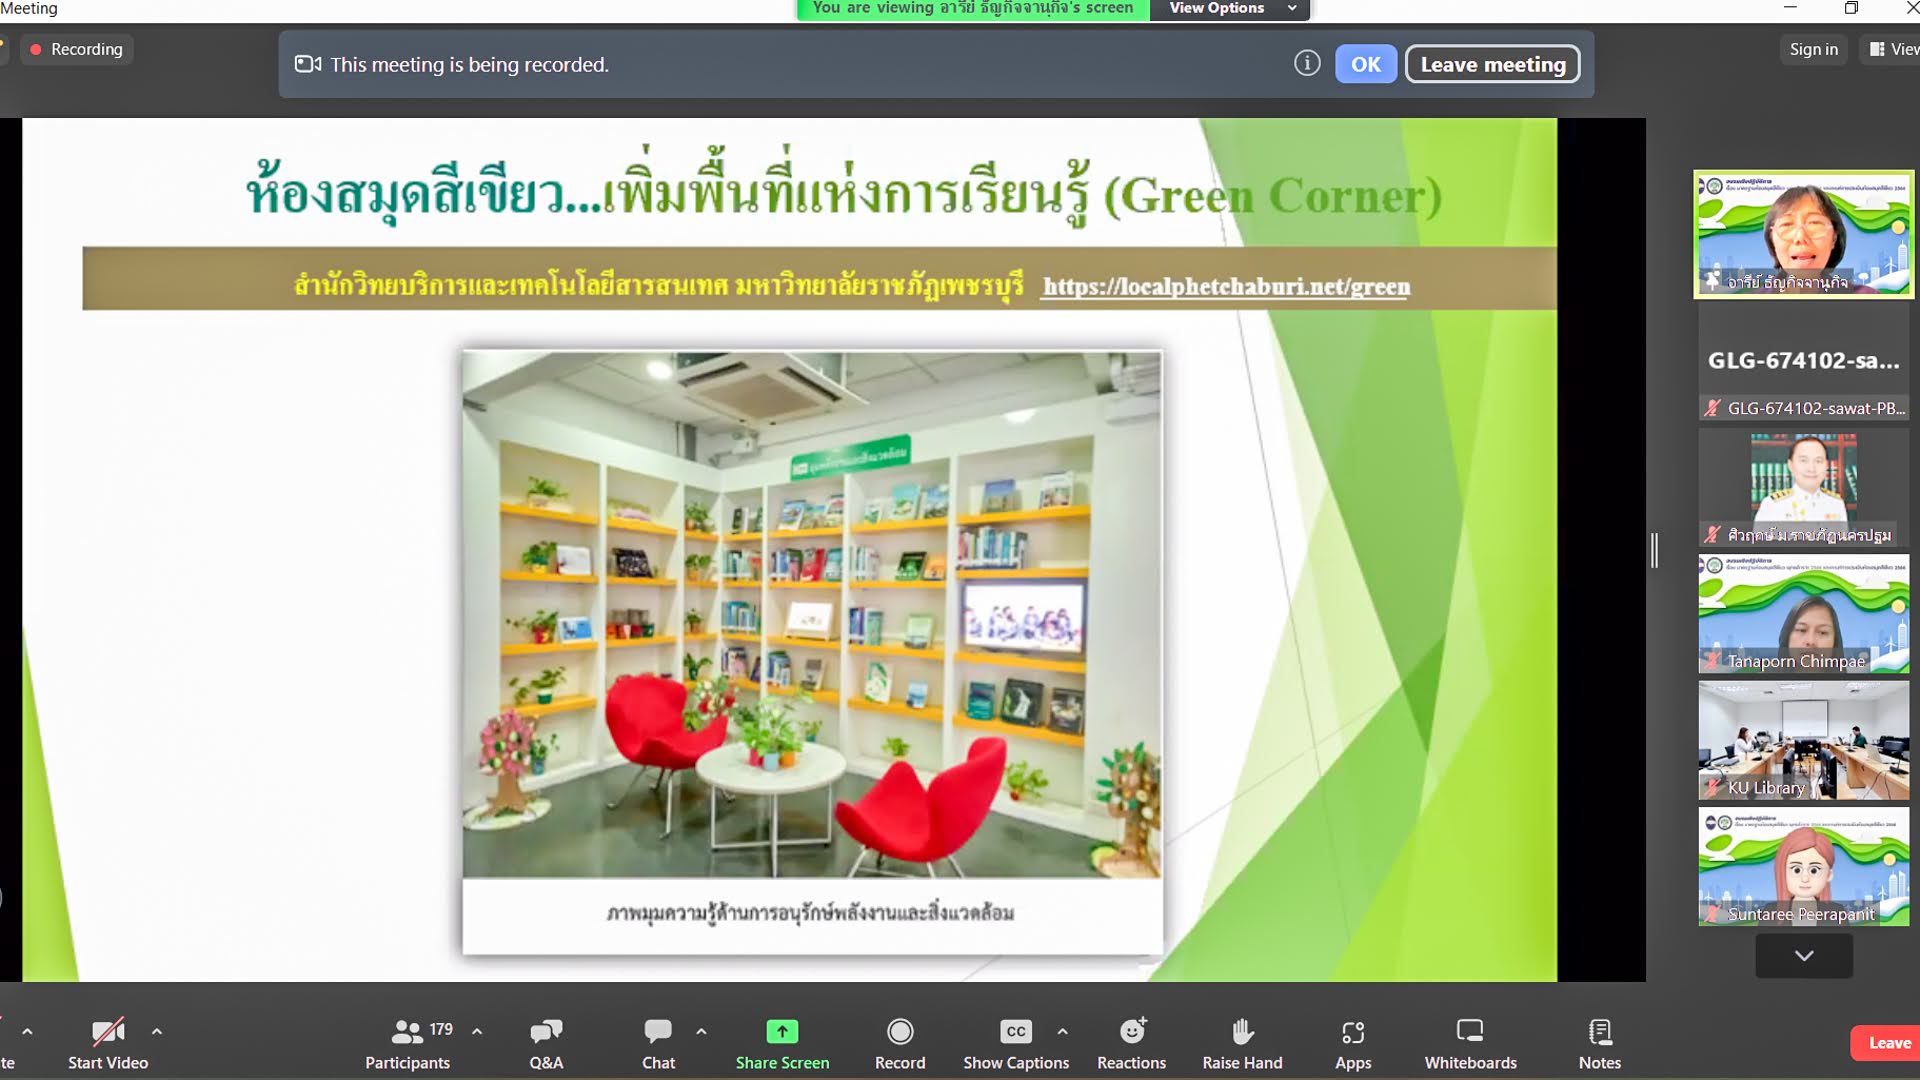 สำนักวิทยบริการฯ อบรมเชิงปฏิบัติการ แบบออนไลน์  (Zoom Meeting) เรื่อง มาตรฐานห้องสมุดสีเขียว พ.ศ. 2566 และเกณฑ์ห้องสมุดสีเขียว 2566 จัดโดย ชมรมห้องสมุดสีเขียว สมาคมห้องสมุดแห่งประเทศไทย